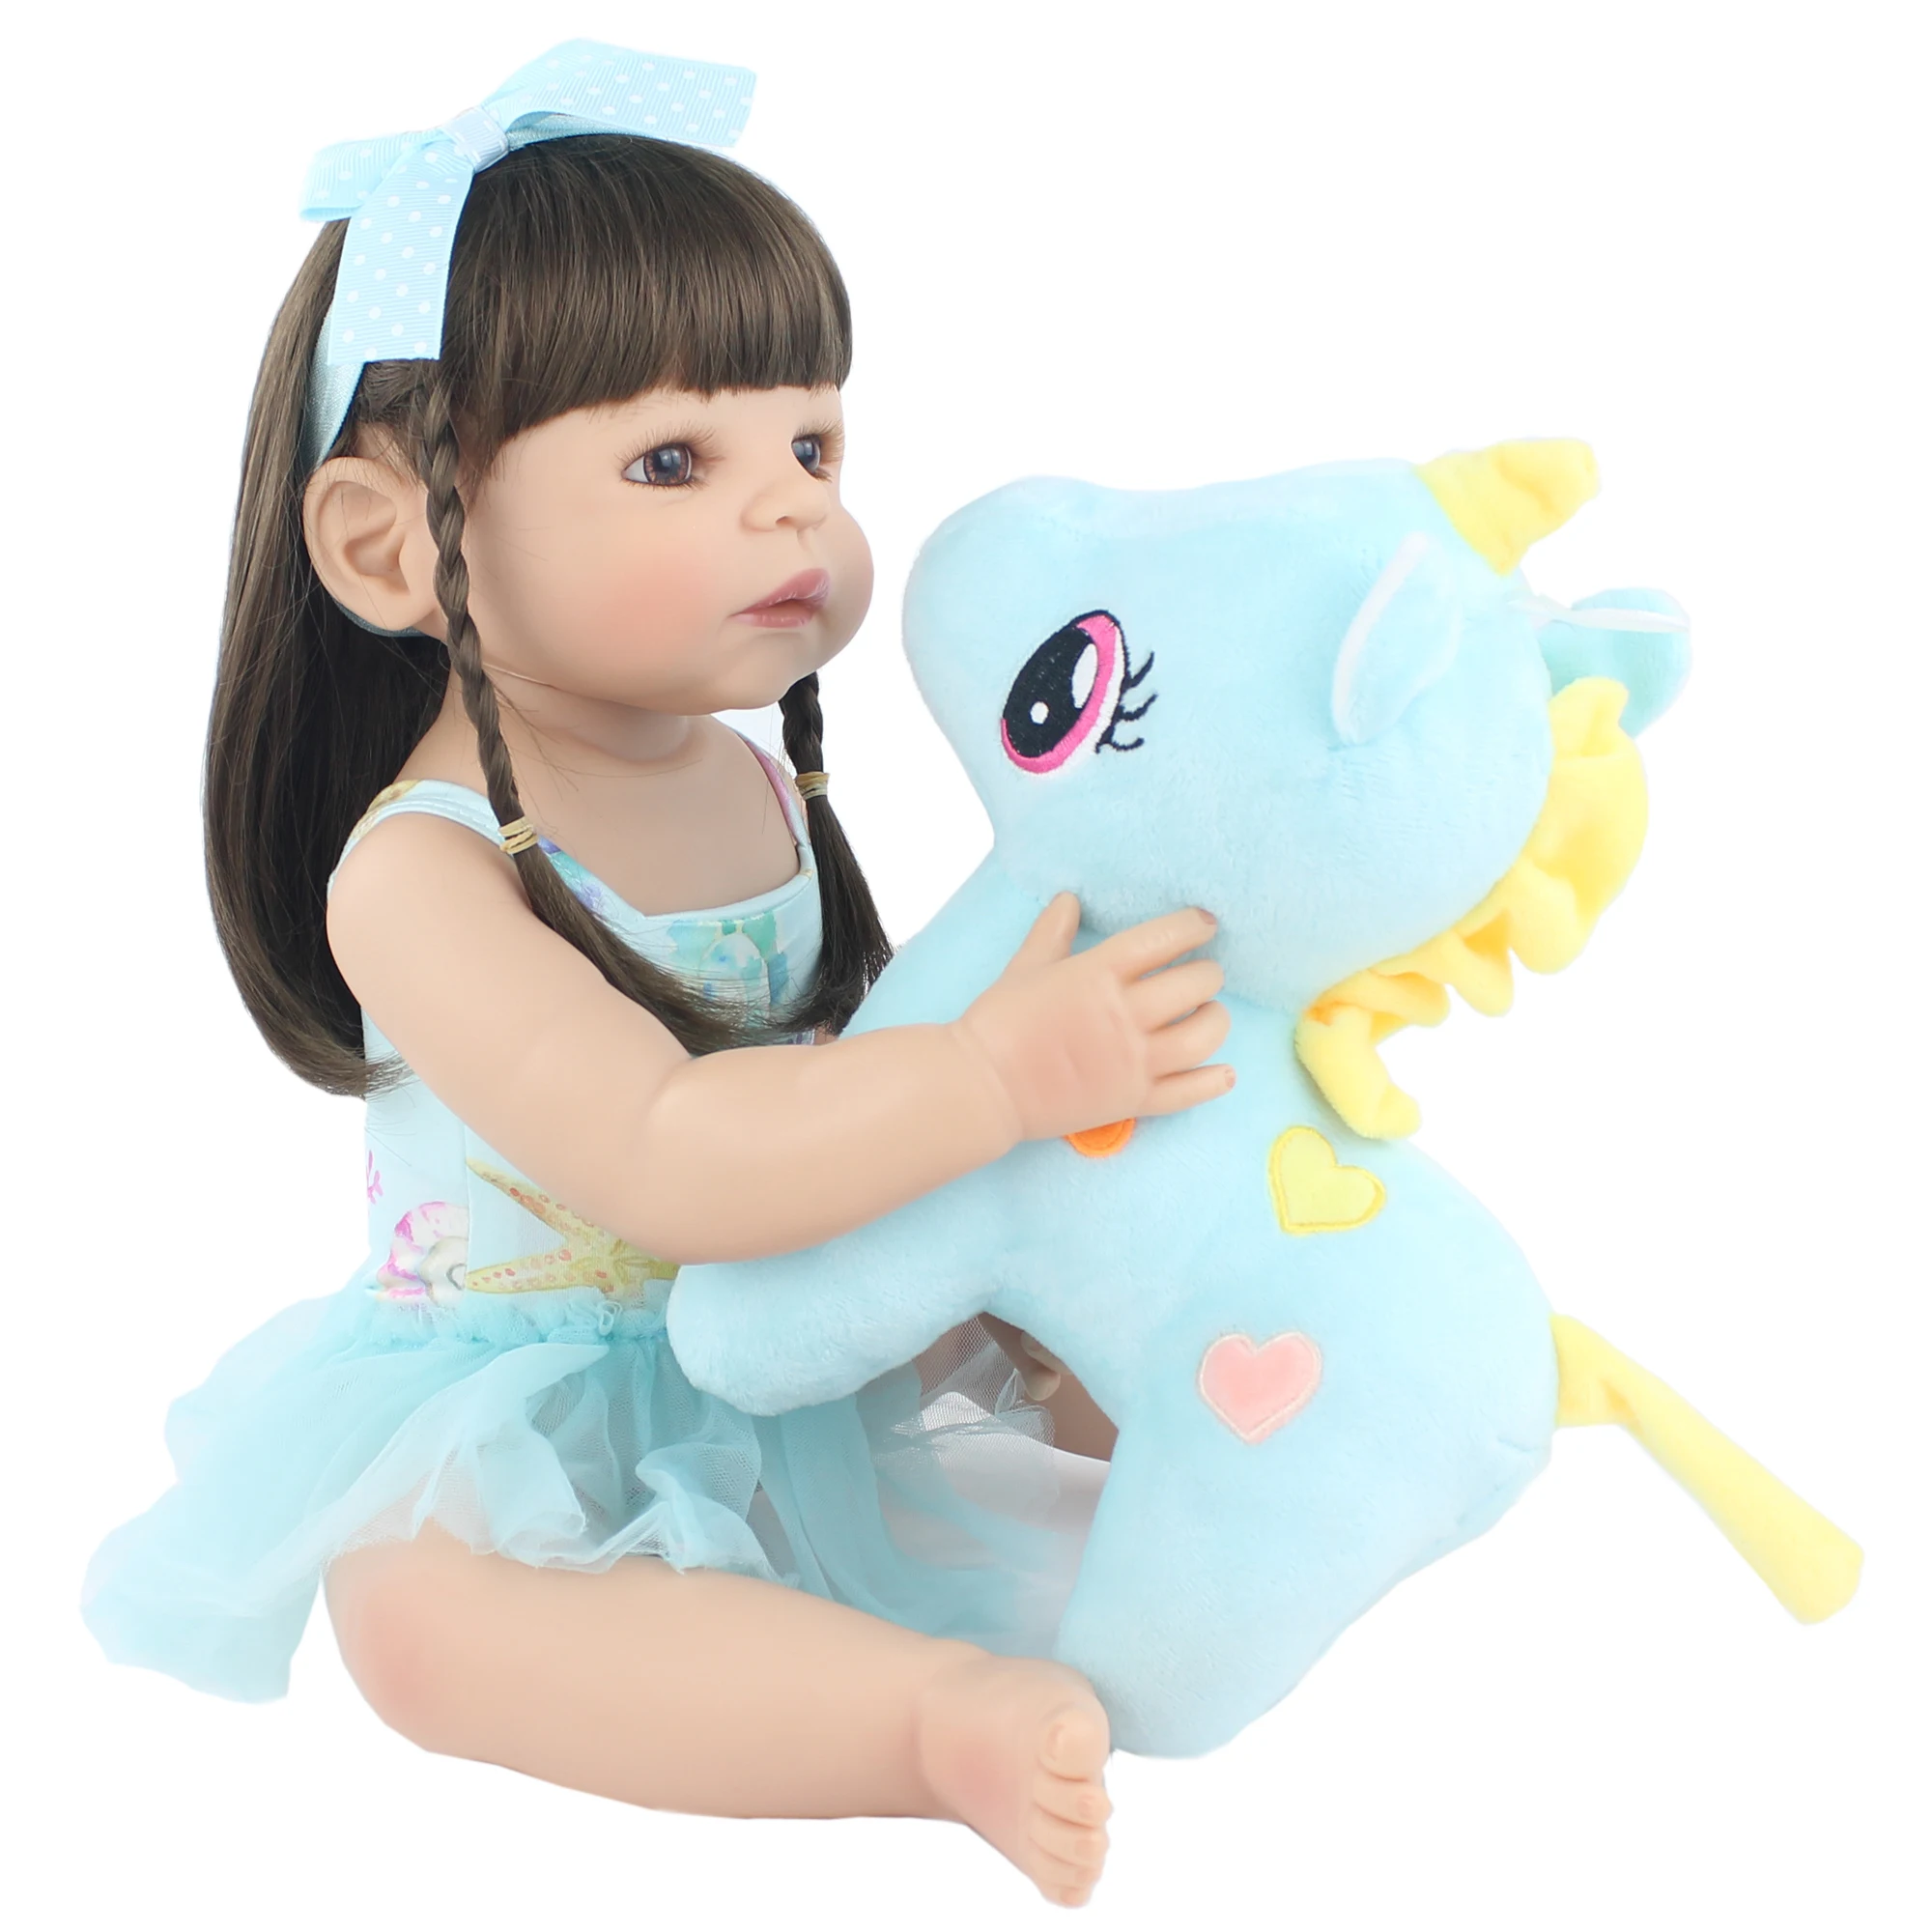 55 см полностью силиконовая кукла-Реборн, игрушка, Реалистичная виниловая принцесса, единорог, детская игрушка для купания, подарок на день рождения, нарядная кукла